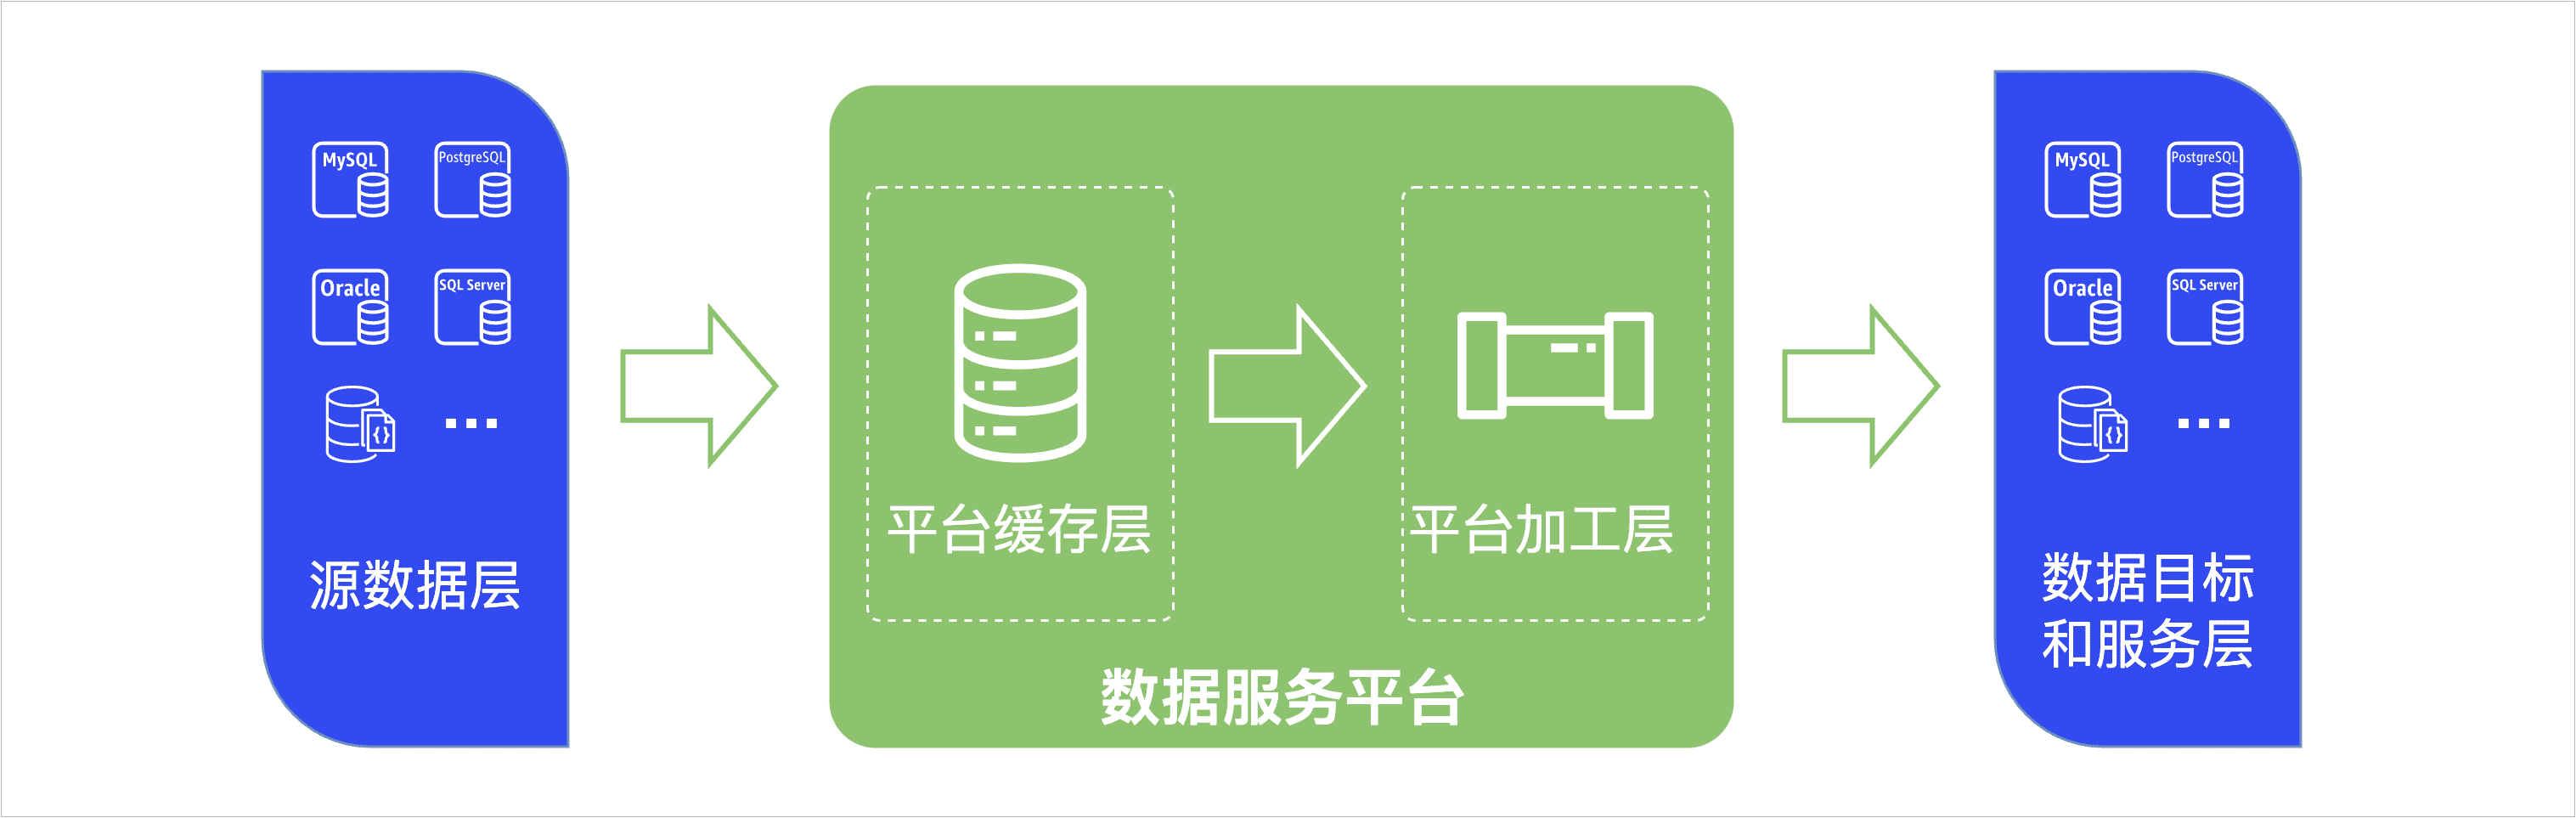 数据服务平台架构